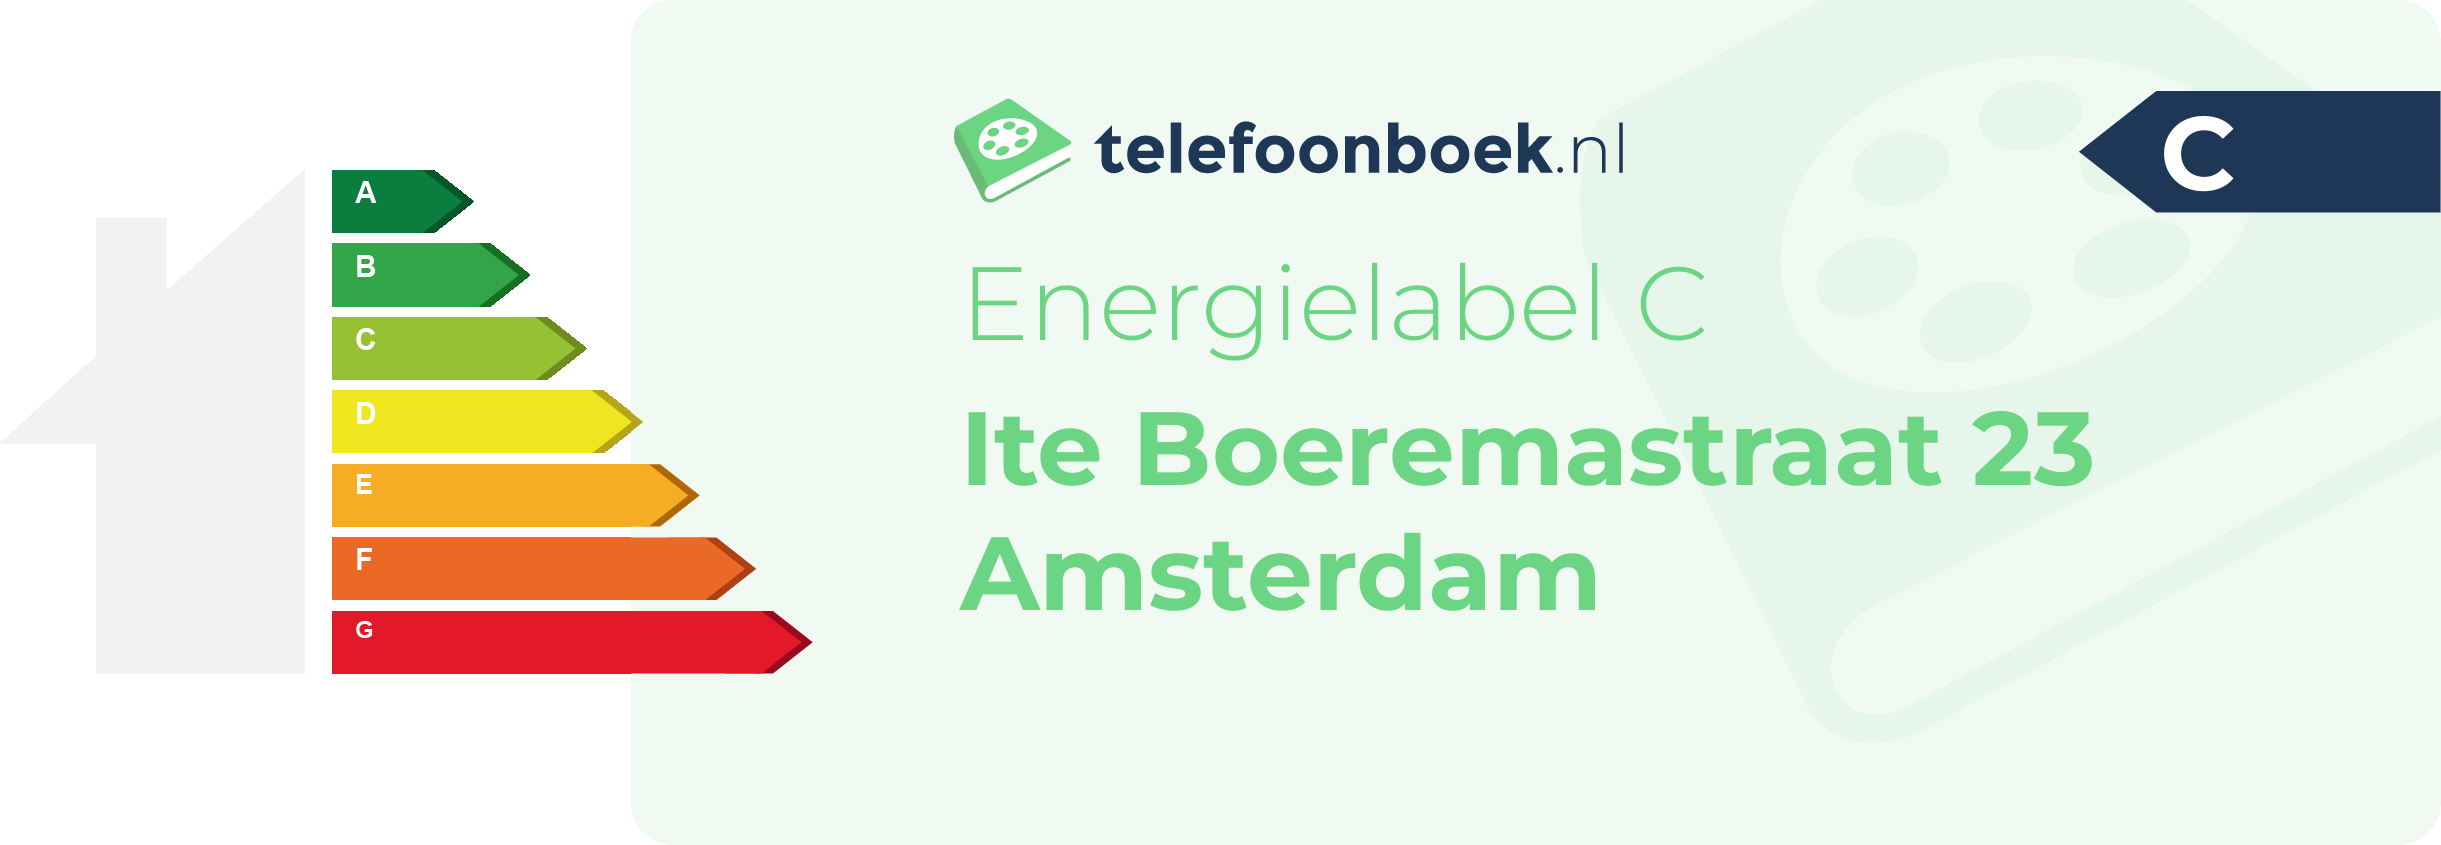 Energielabel Ite Boeremastraat 23 Amsterdam